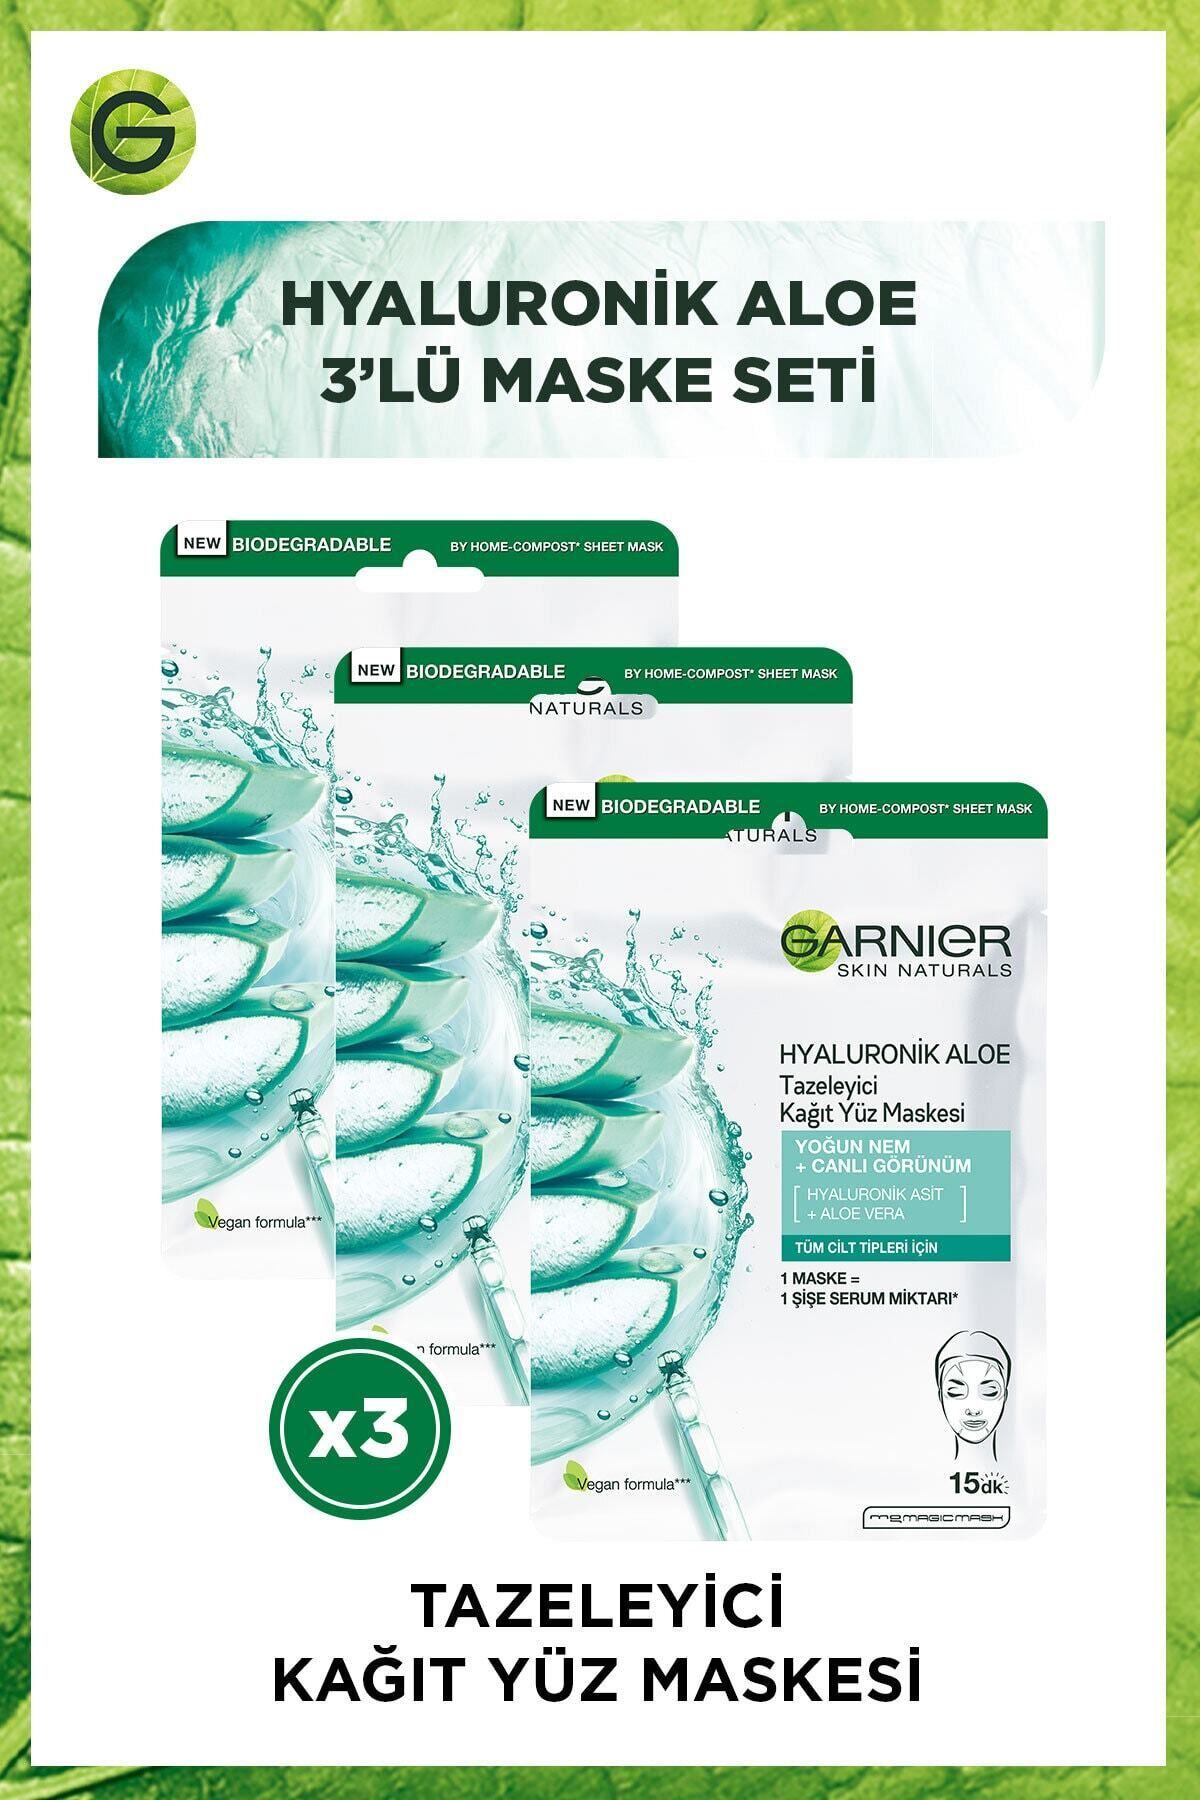 Garnier Hyaluronik Aloe Tazeleyici Kağıt Yüz Maskesi 3'lü Set